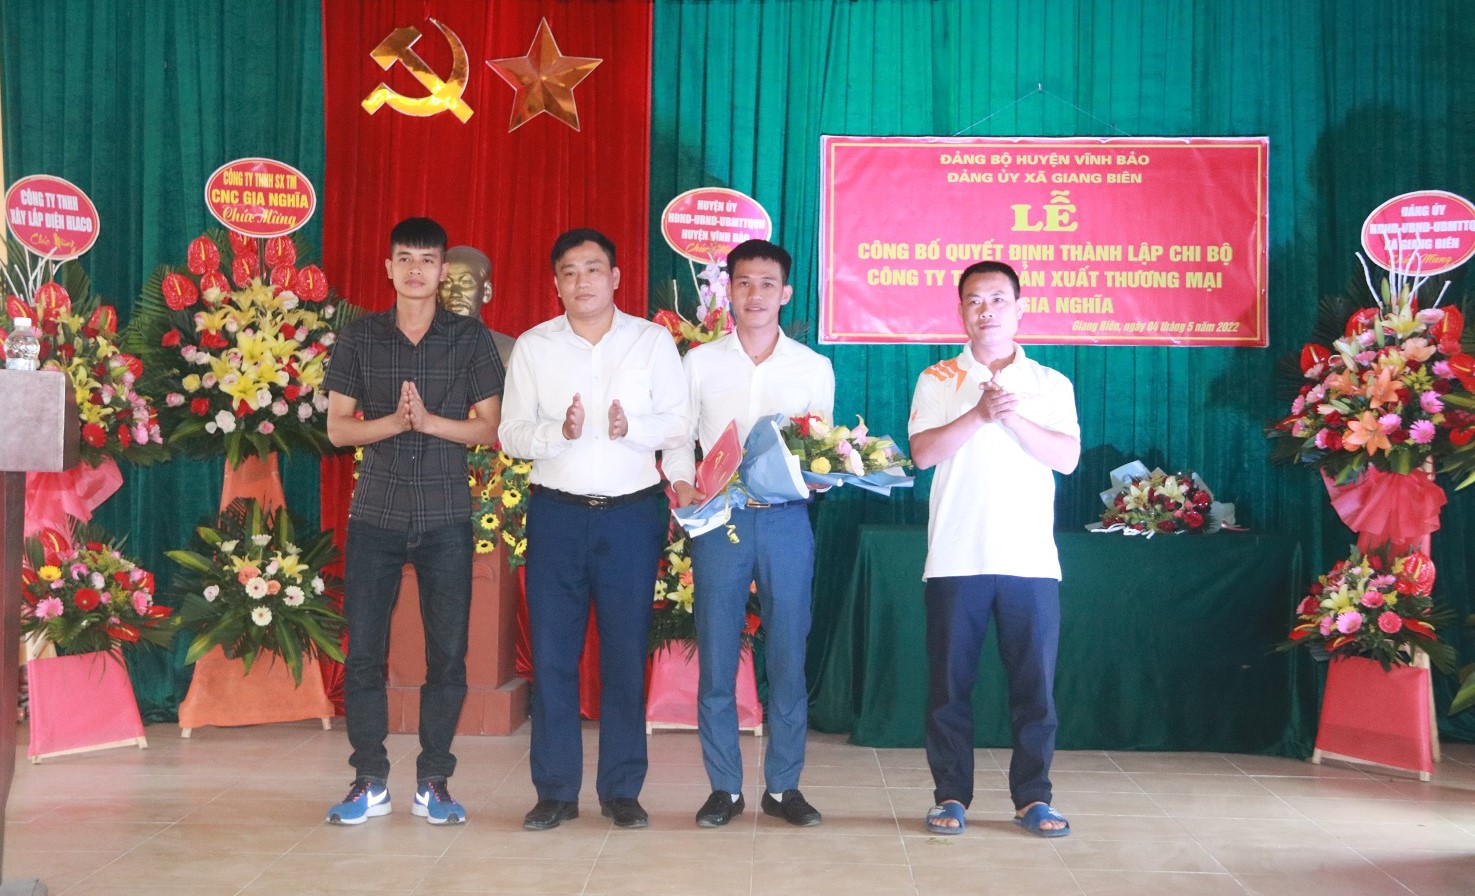 Lãnh đạo Đảng ủy xã Giang Biên, huyện Vĩnh Bảo trao quyết định thành lập Chi bộ Đảng Công ty TNHH sản xuất thương mại CNC Gia Nghĩa. 